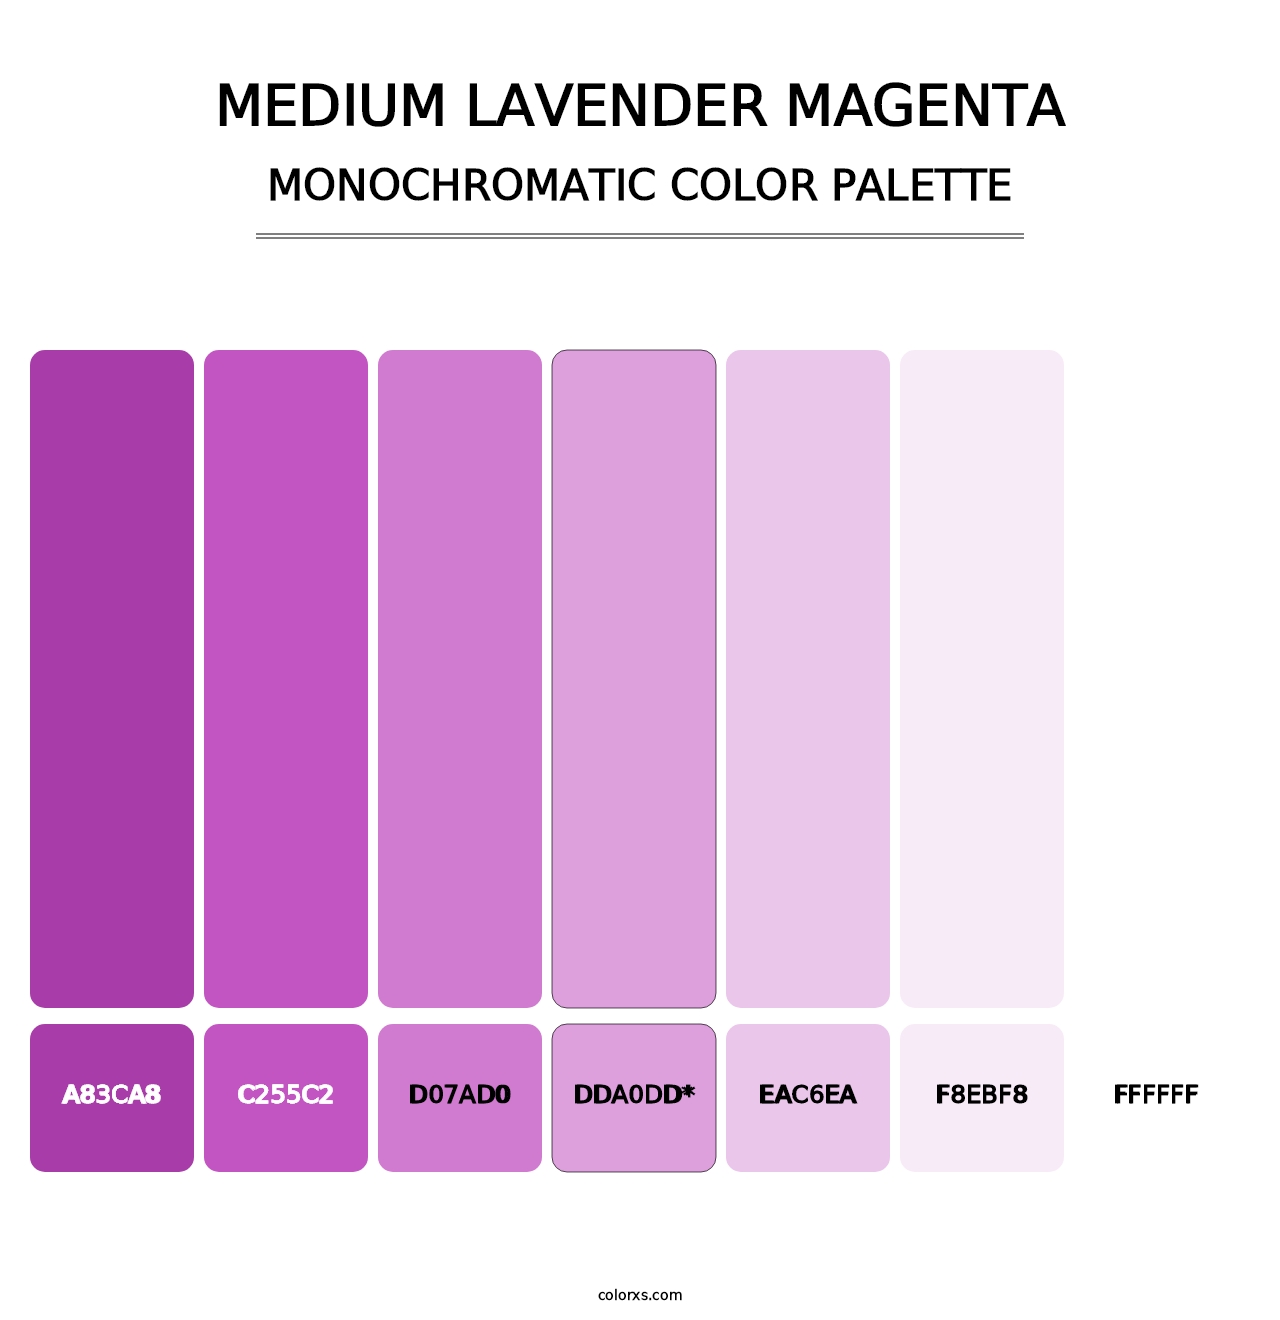 Medium Lavender Magenta - Monochromatic Color Palette